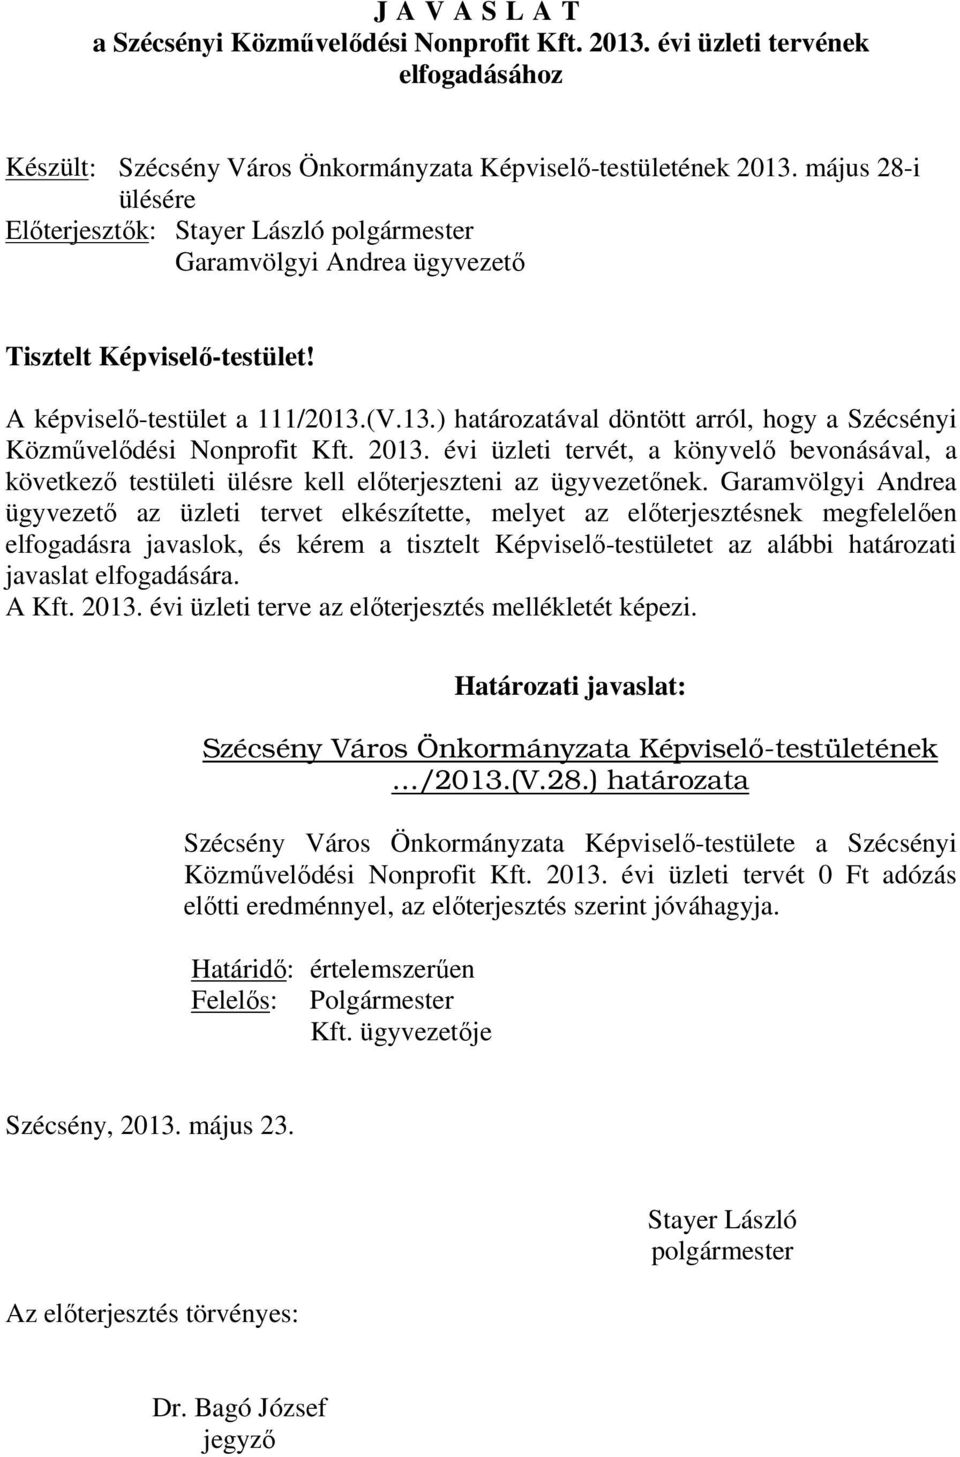 (V.13.) határozatával döntött arról, hogy a Szécsényi Közművelődési Nonprofit Kft. 2013. évi üzleti tervét, a könyvelő bevonásával, a következő testületi ülésre kell előterjeszteni az ügyvezetőnek.